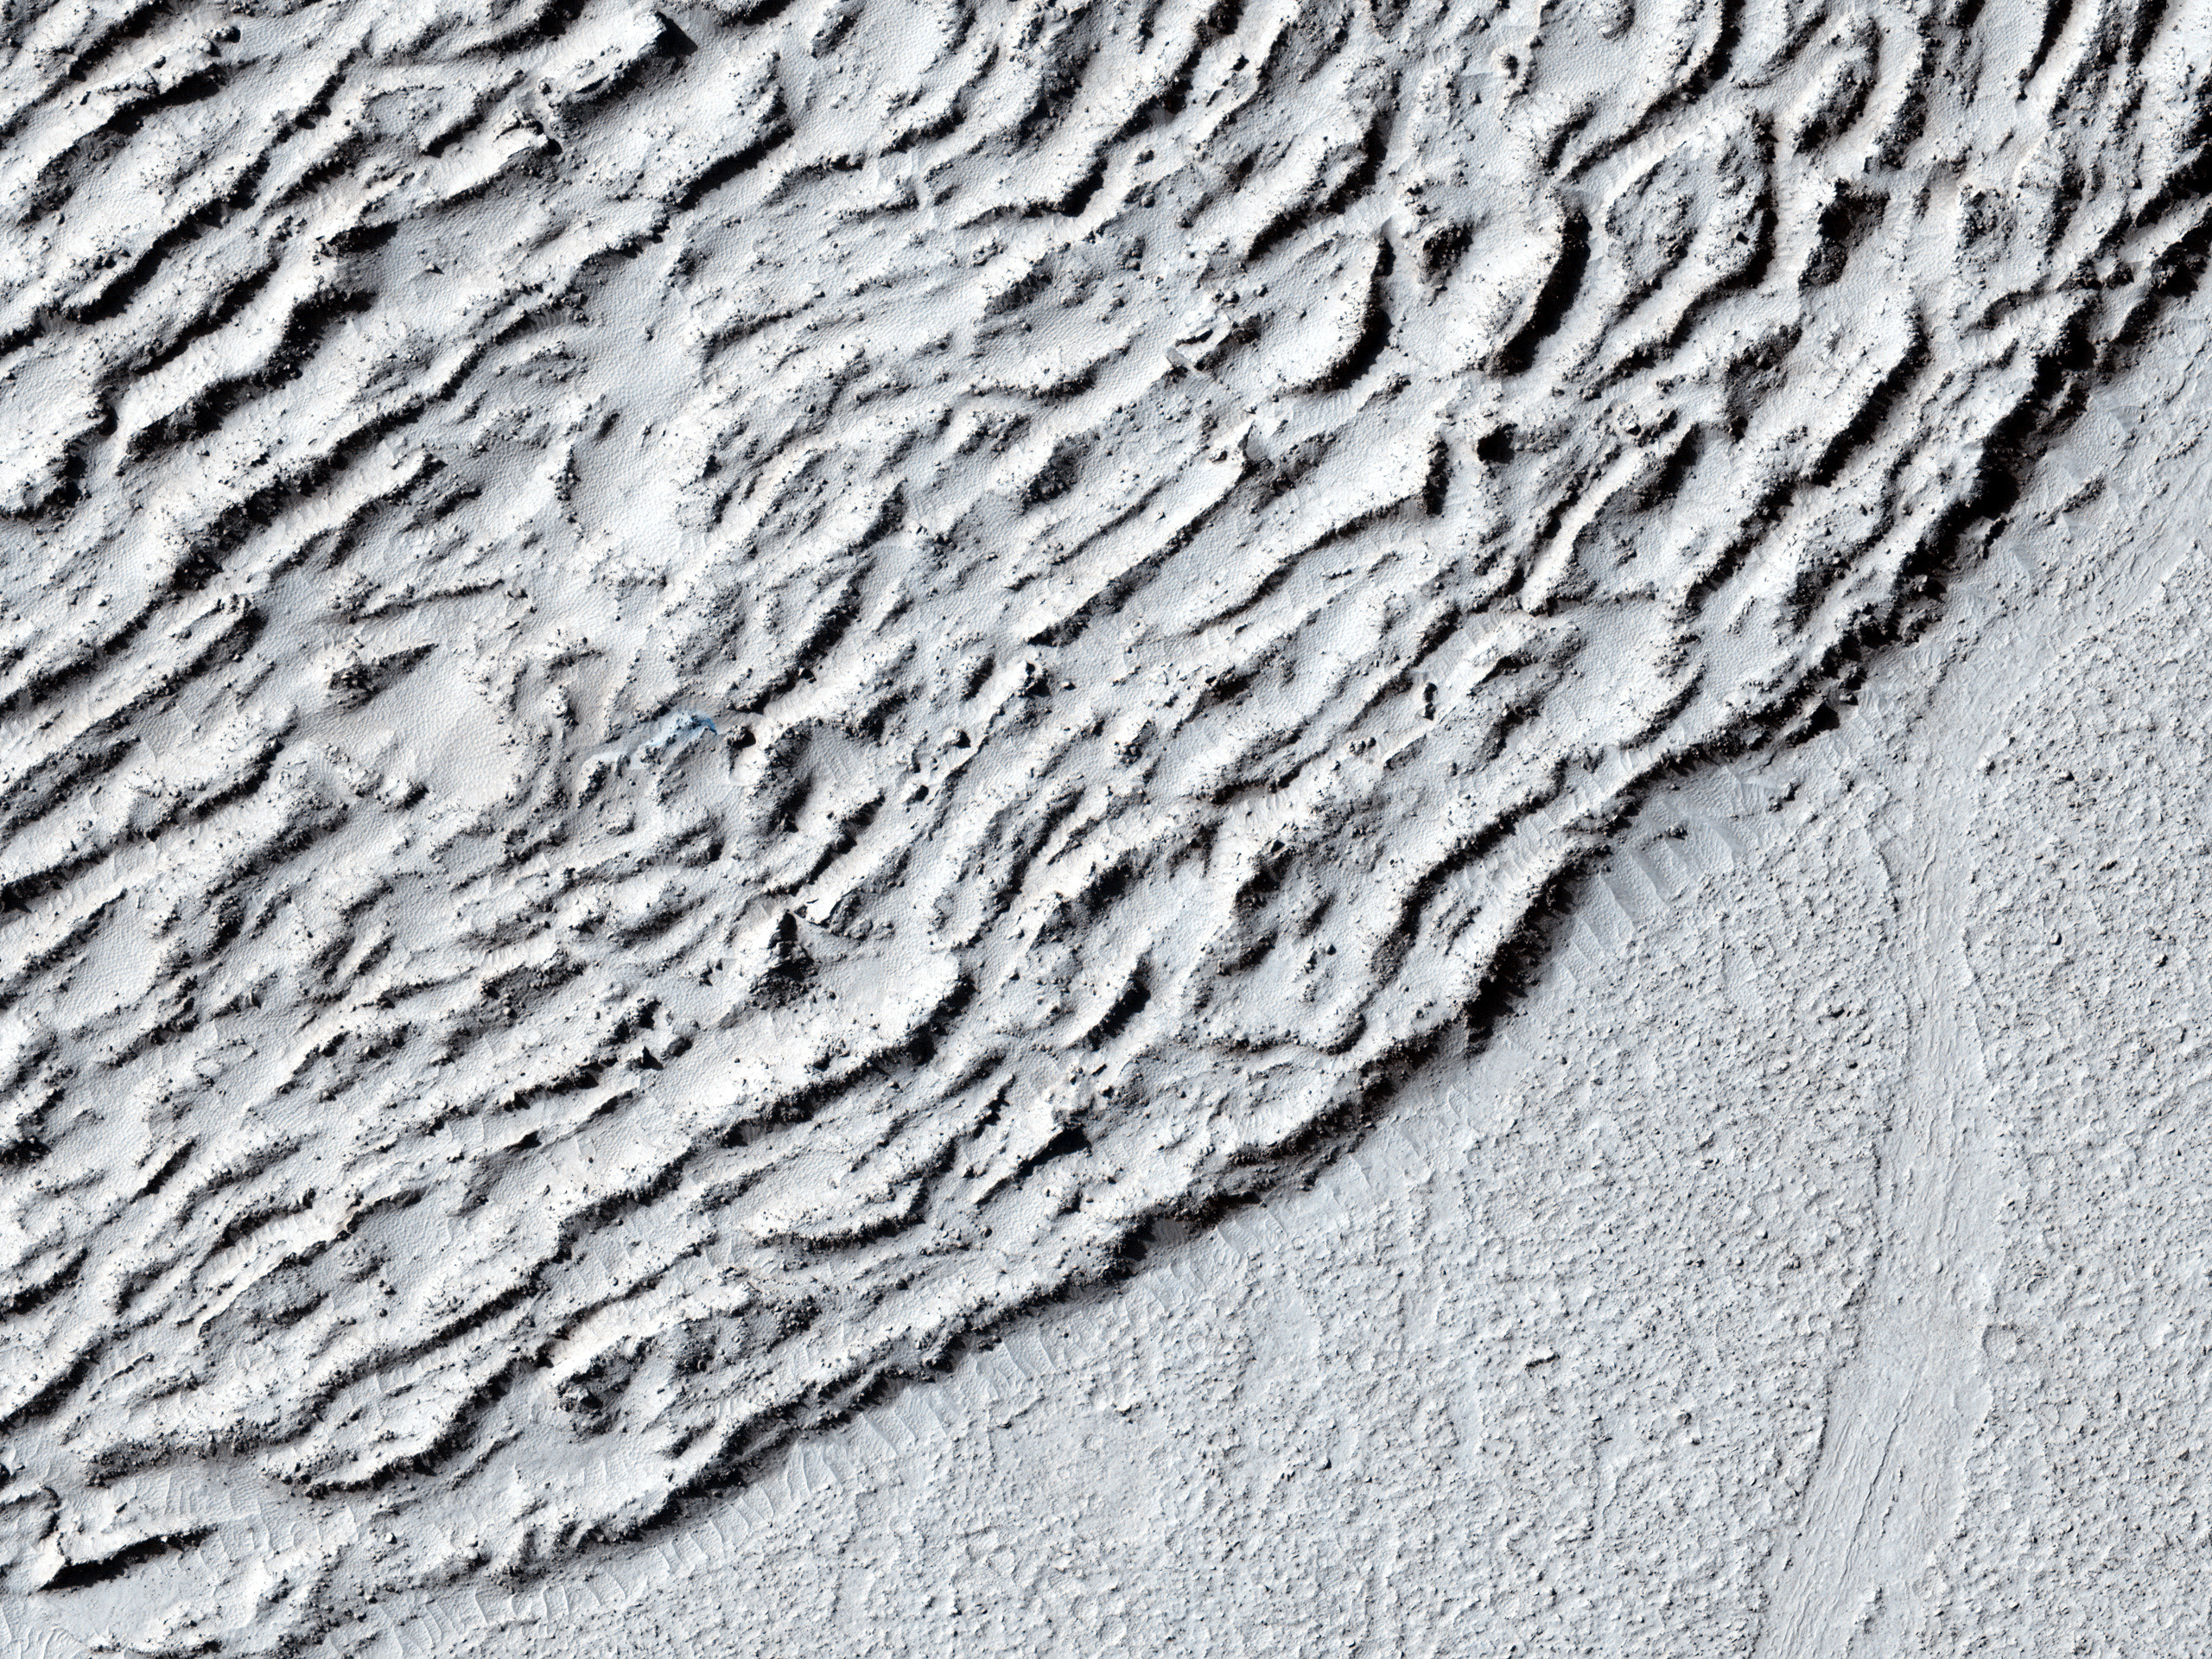 Lava contra un cráter de impacto en Elysium Planitia